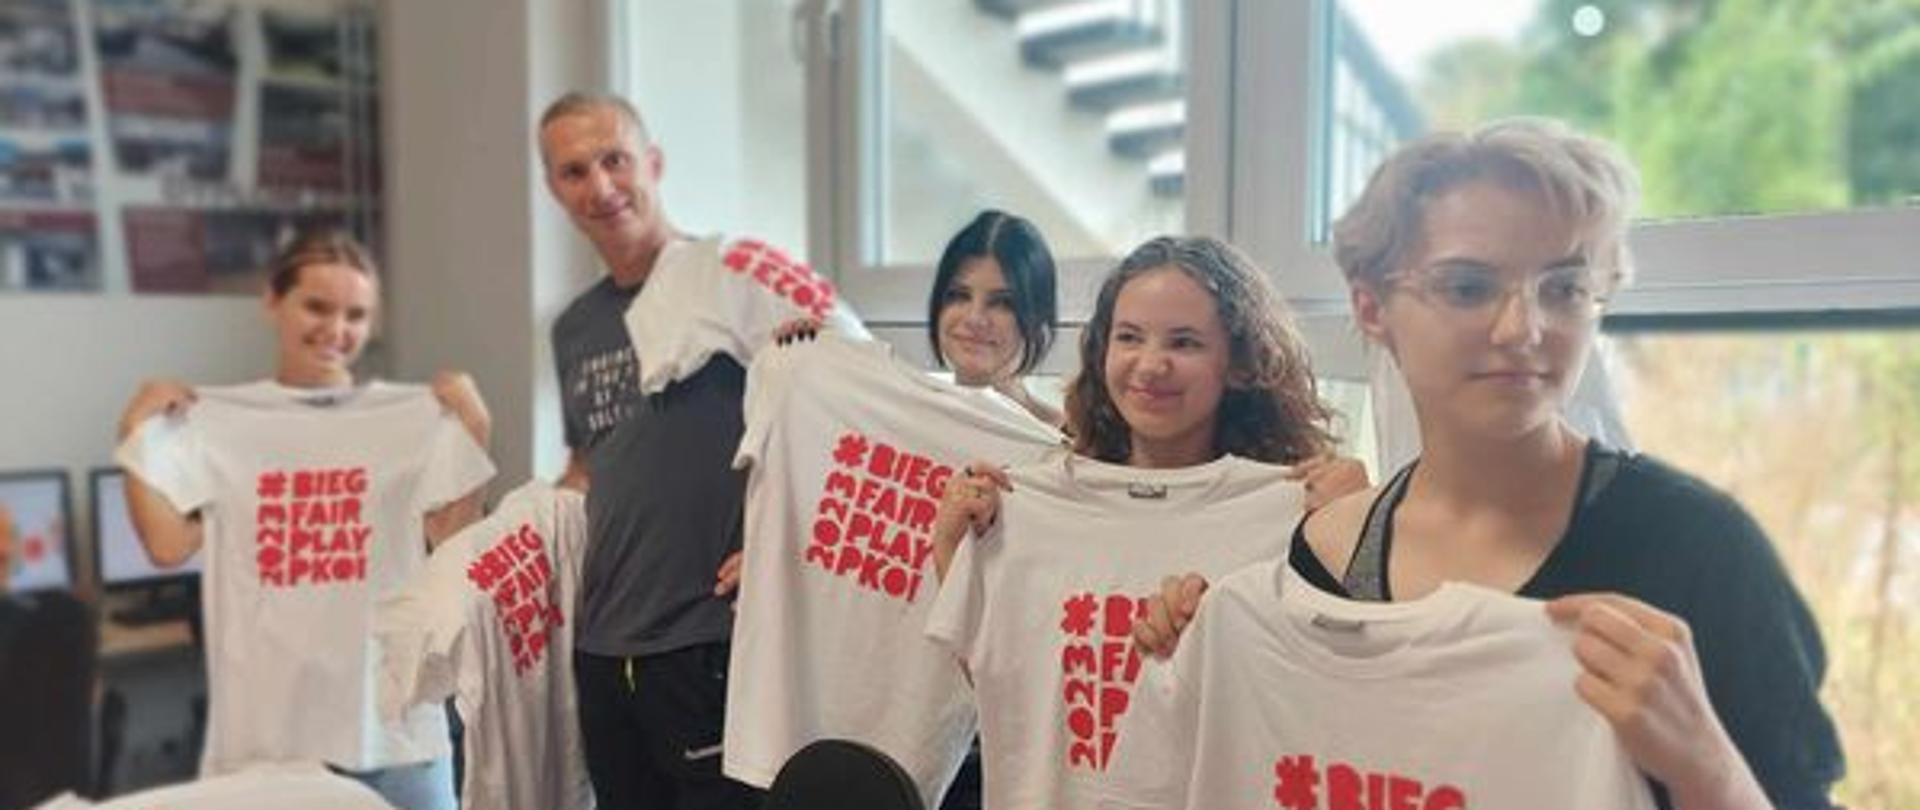 W pracowni tkaniny artystycznej PLSP w Lublinie uczennice i nauczyciel Tomasz Krasowski trzymają w rękach rozłożone białe koszulki z czerwonym napisem "Bieg Fair Play PKOL".